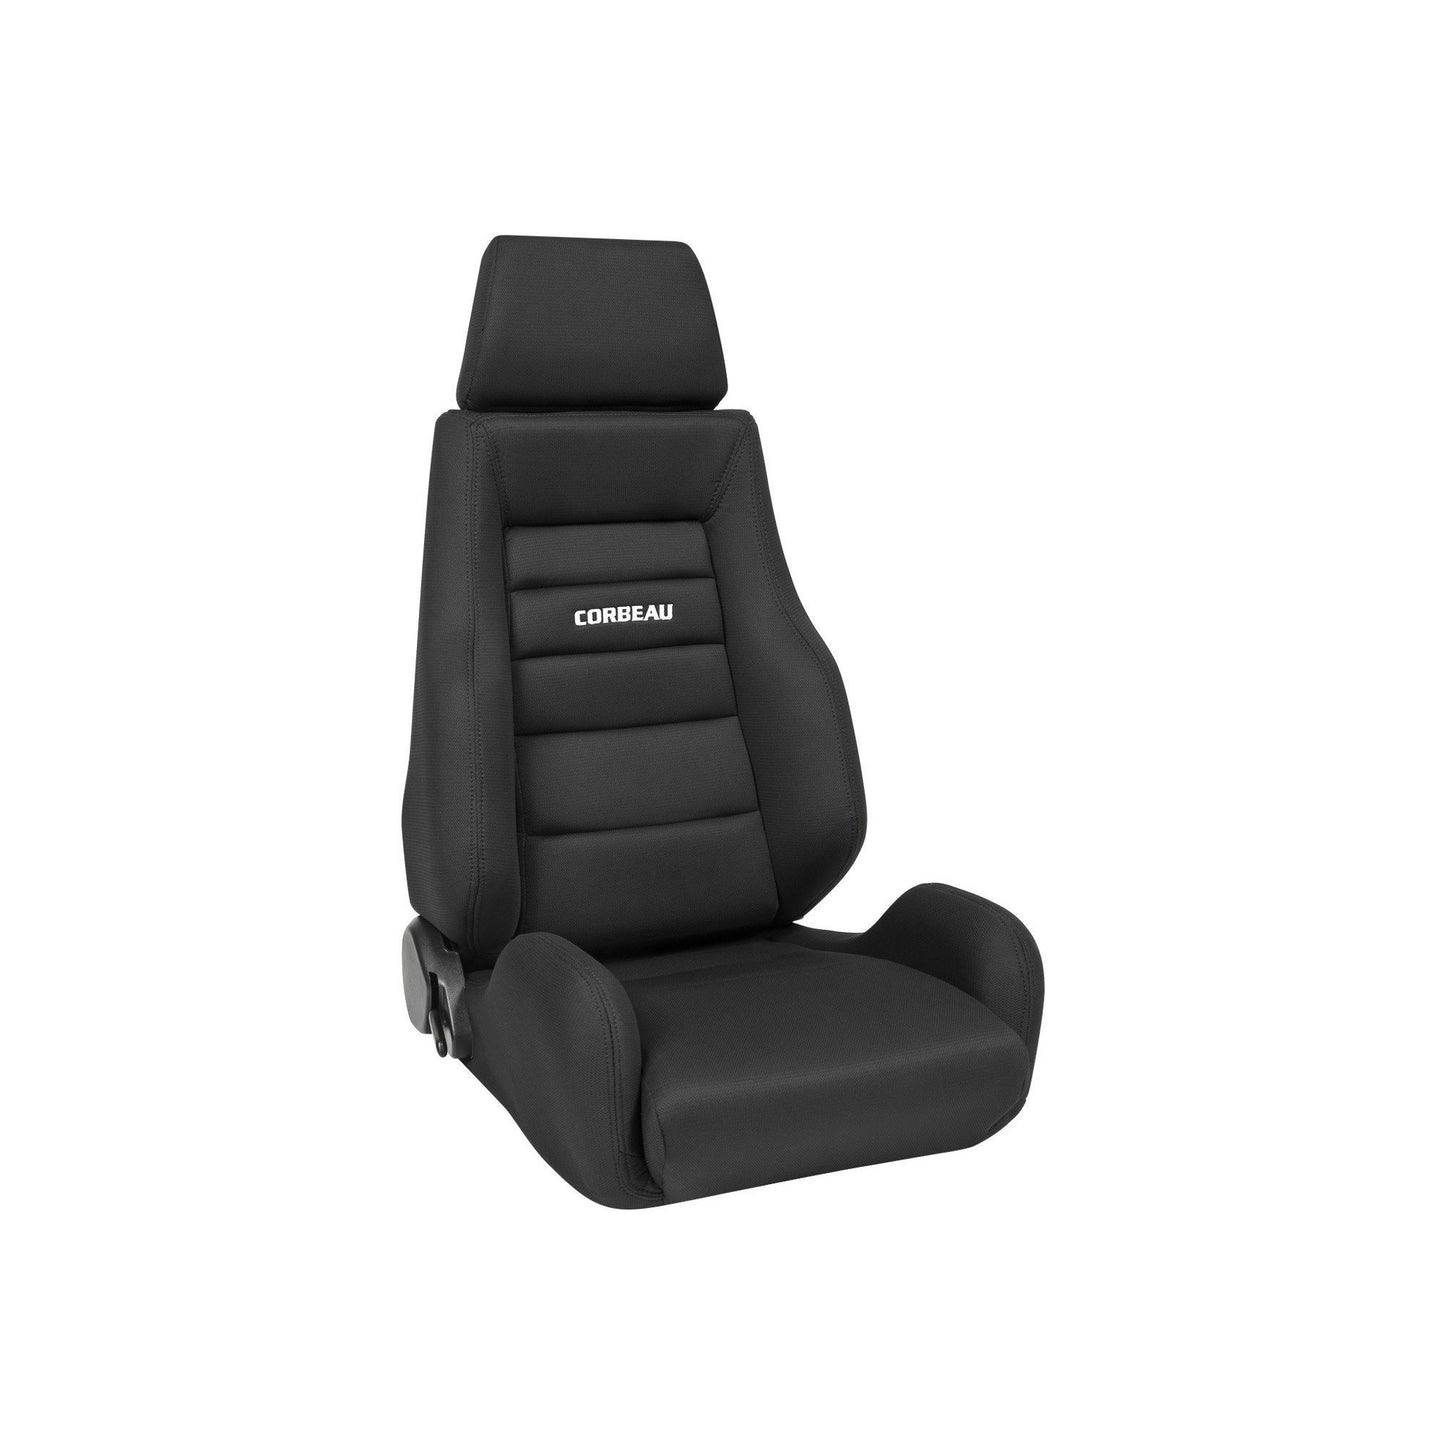 Corbeau GTSII Seat Black Cloth - Universal-CBU-20301PR-CBU-20301PR-Seats-Corbeau-JDMuscle